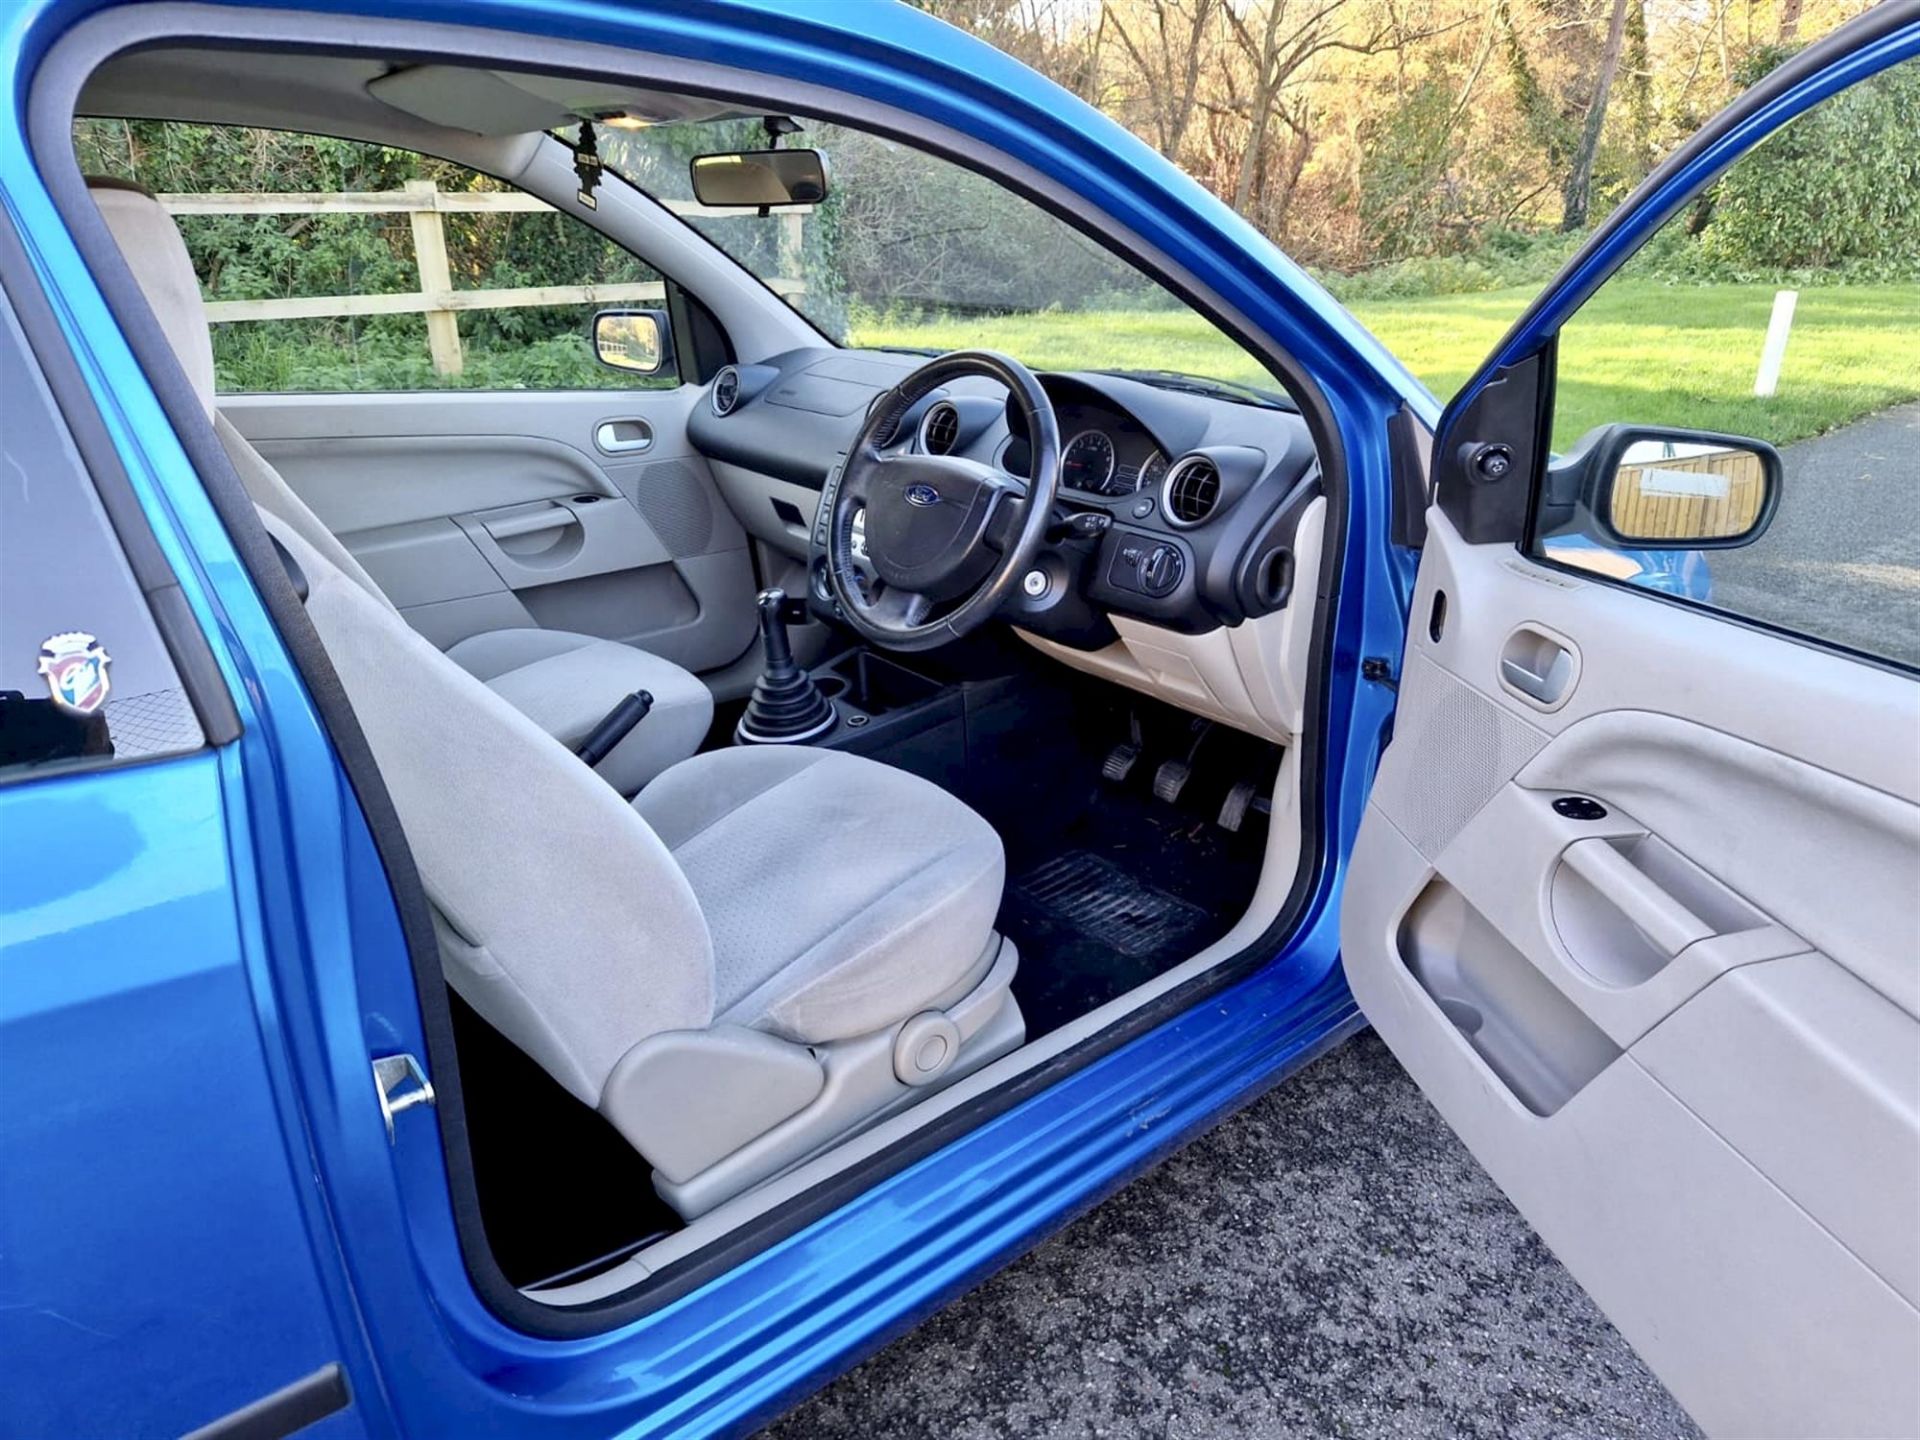 2004 Ford Fiesta 1.4 Ghia 3-door hatchback. Registration number: EO54 JNK. Metallic Aquarius Blue, - Image 7 of 16